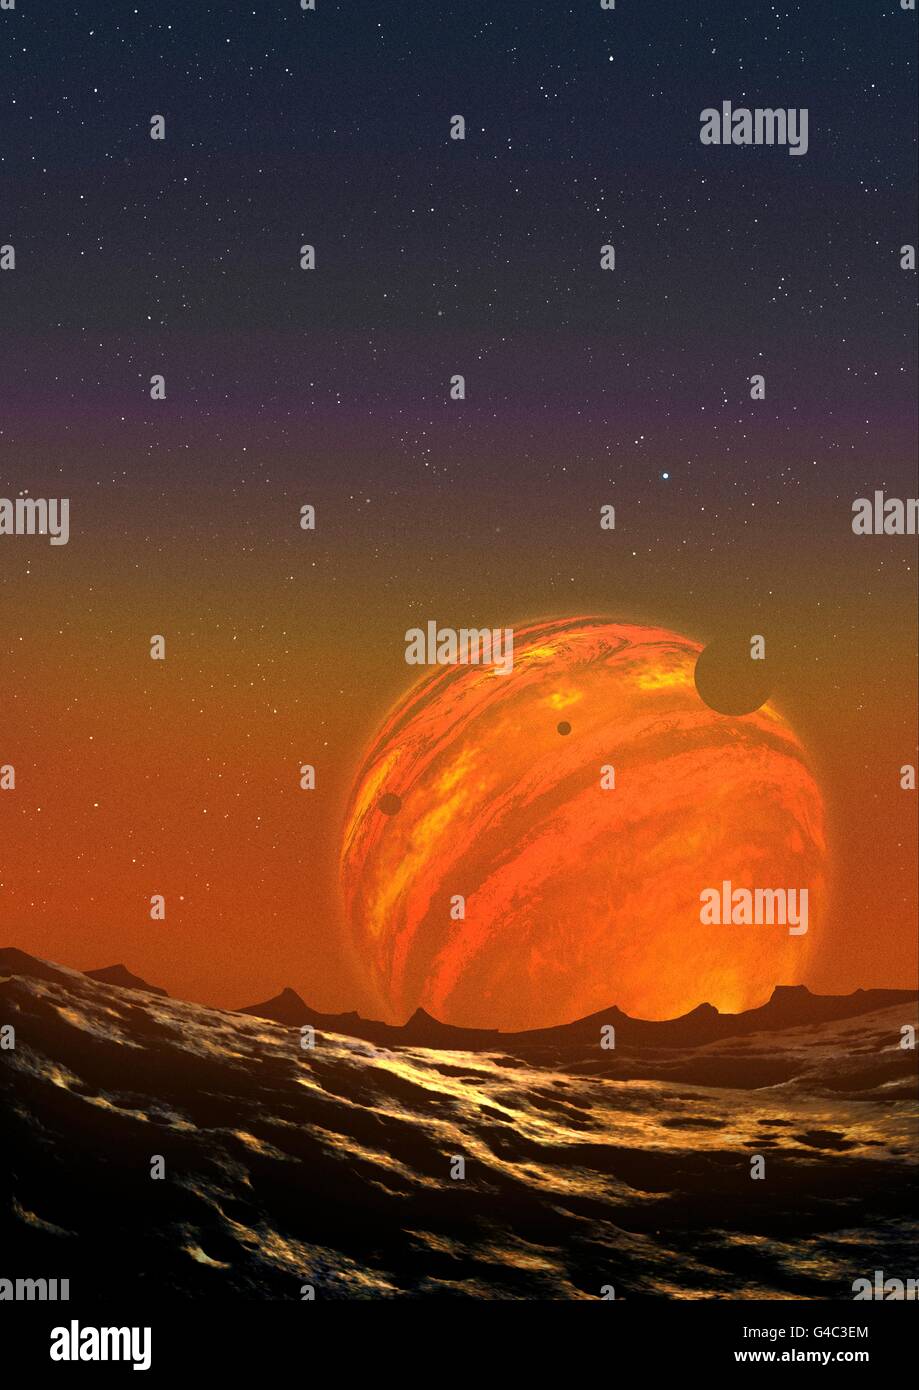 Illustration d'une planète en suspension dans l'eau. J318.5-22 PSO est une planète dans la constellation de Pictor, autour de 80 années-lumière de la Terre. Il est étrange, dans que, contrairement à la plupart des objets extrasolaires, il ne semble pas être en orbite autour d'une étoile - c'est un planète flottante mesurant environ 6,5 fois la masse de Jupiter. Planètes flottantes libres tels que ceux-ci peuvent résulter d'être éjecté d'un disque protoplanétaire de cotisations à d'autres perturbations de la gravitation objet massif. Cette planète a cloud groupes comme ceux de la géante gazeuse Jupiter, mais ses nuages ont une température supérieure à 800 degrés Celsius, ressemblant à Banque D'Images